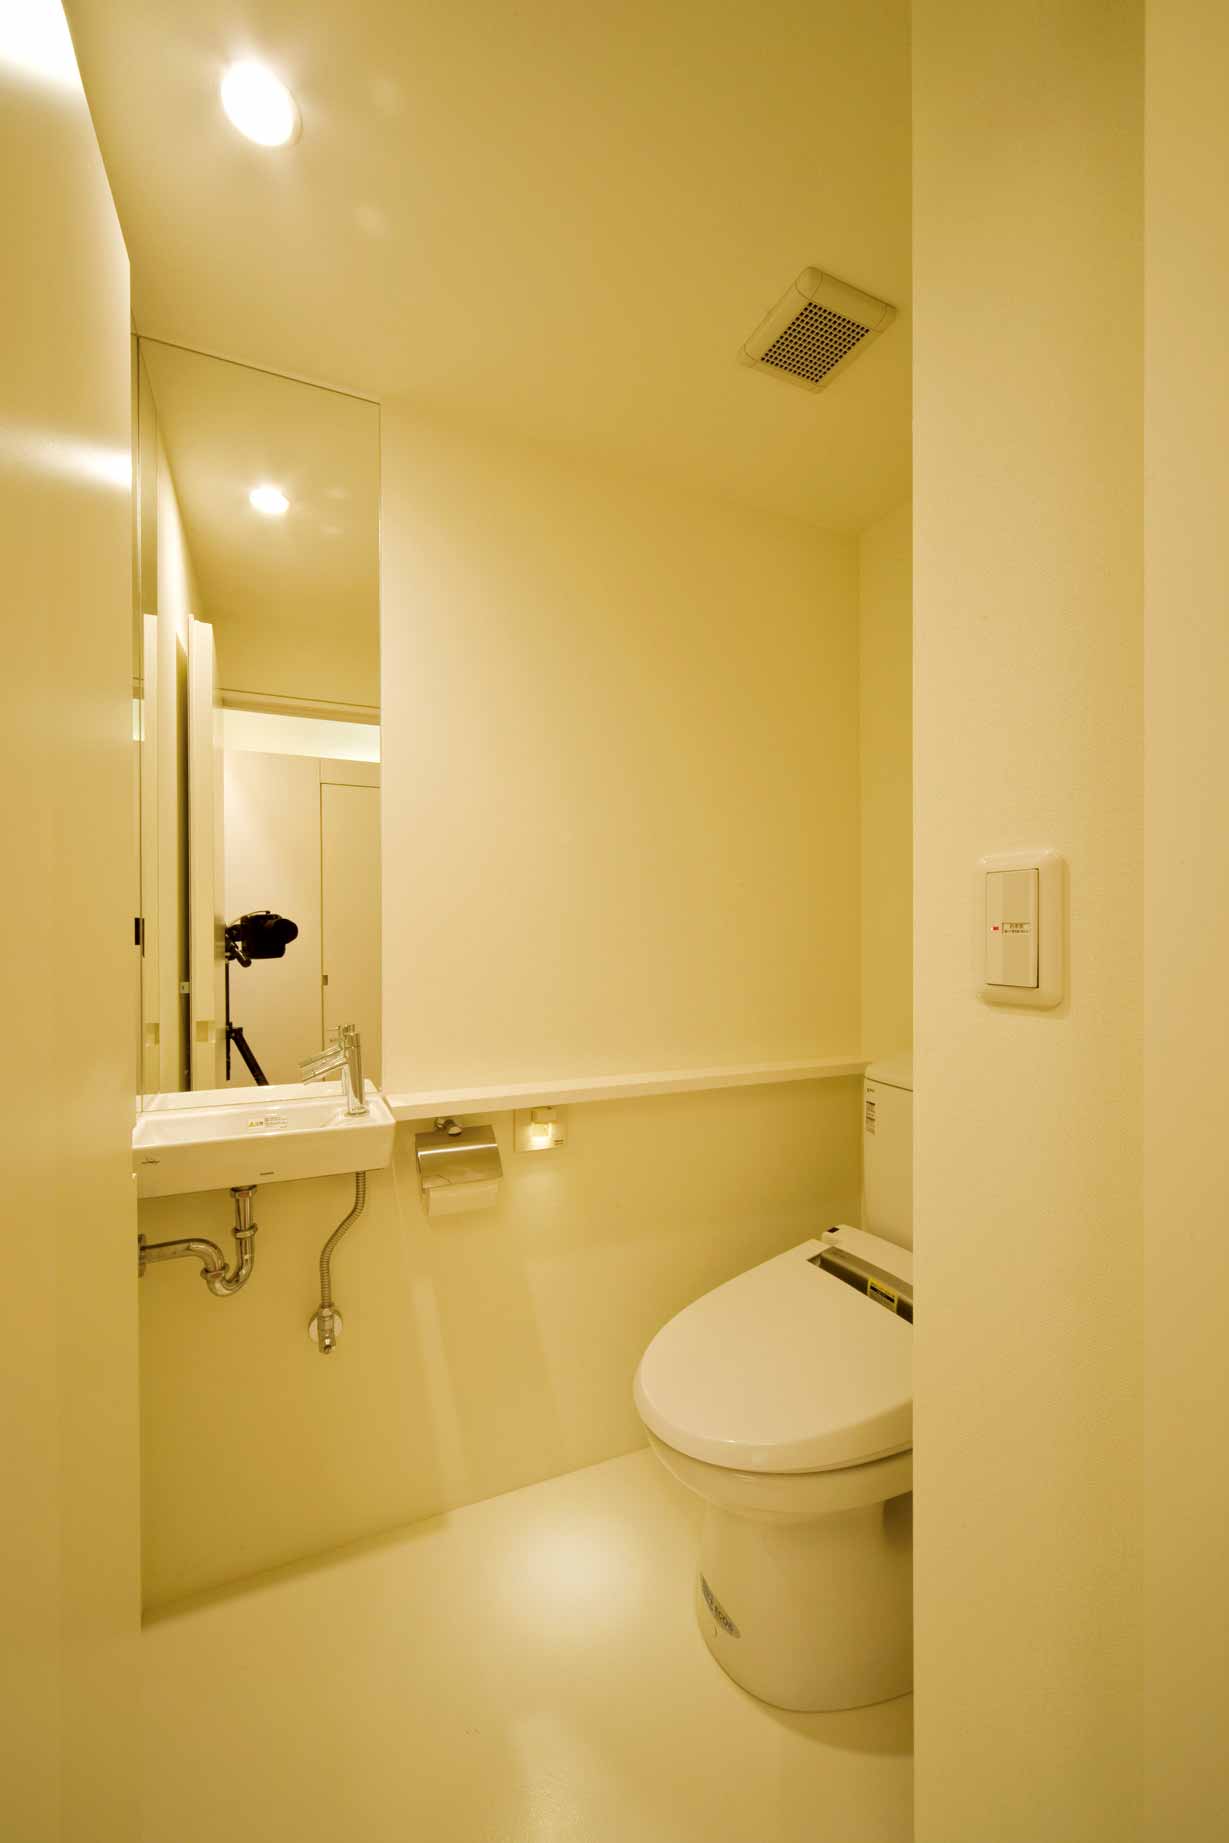 卫生间的设计简约到了极致，只保留了最基本的功能。